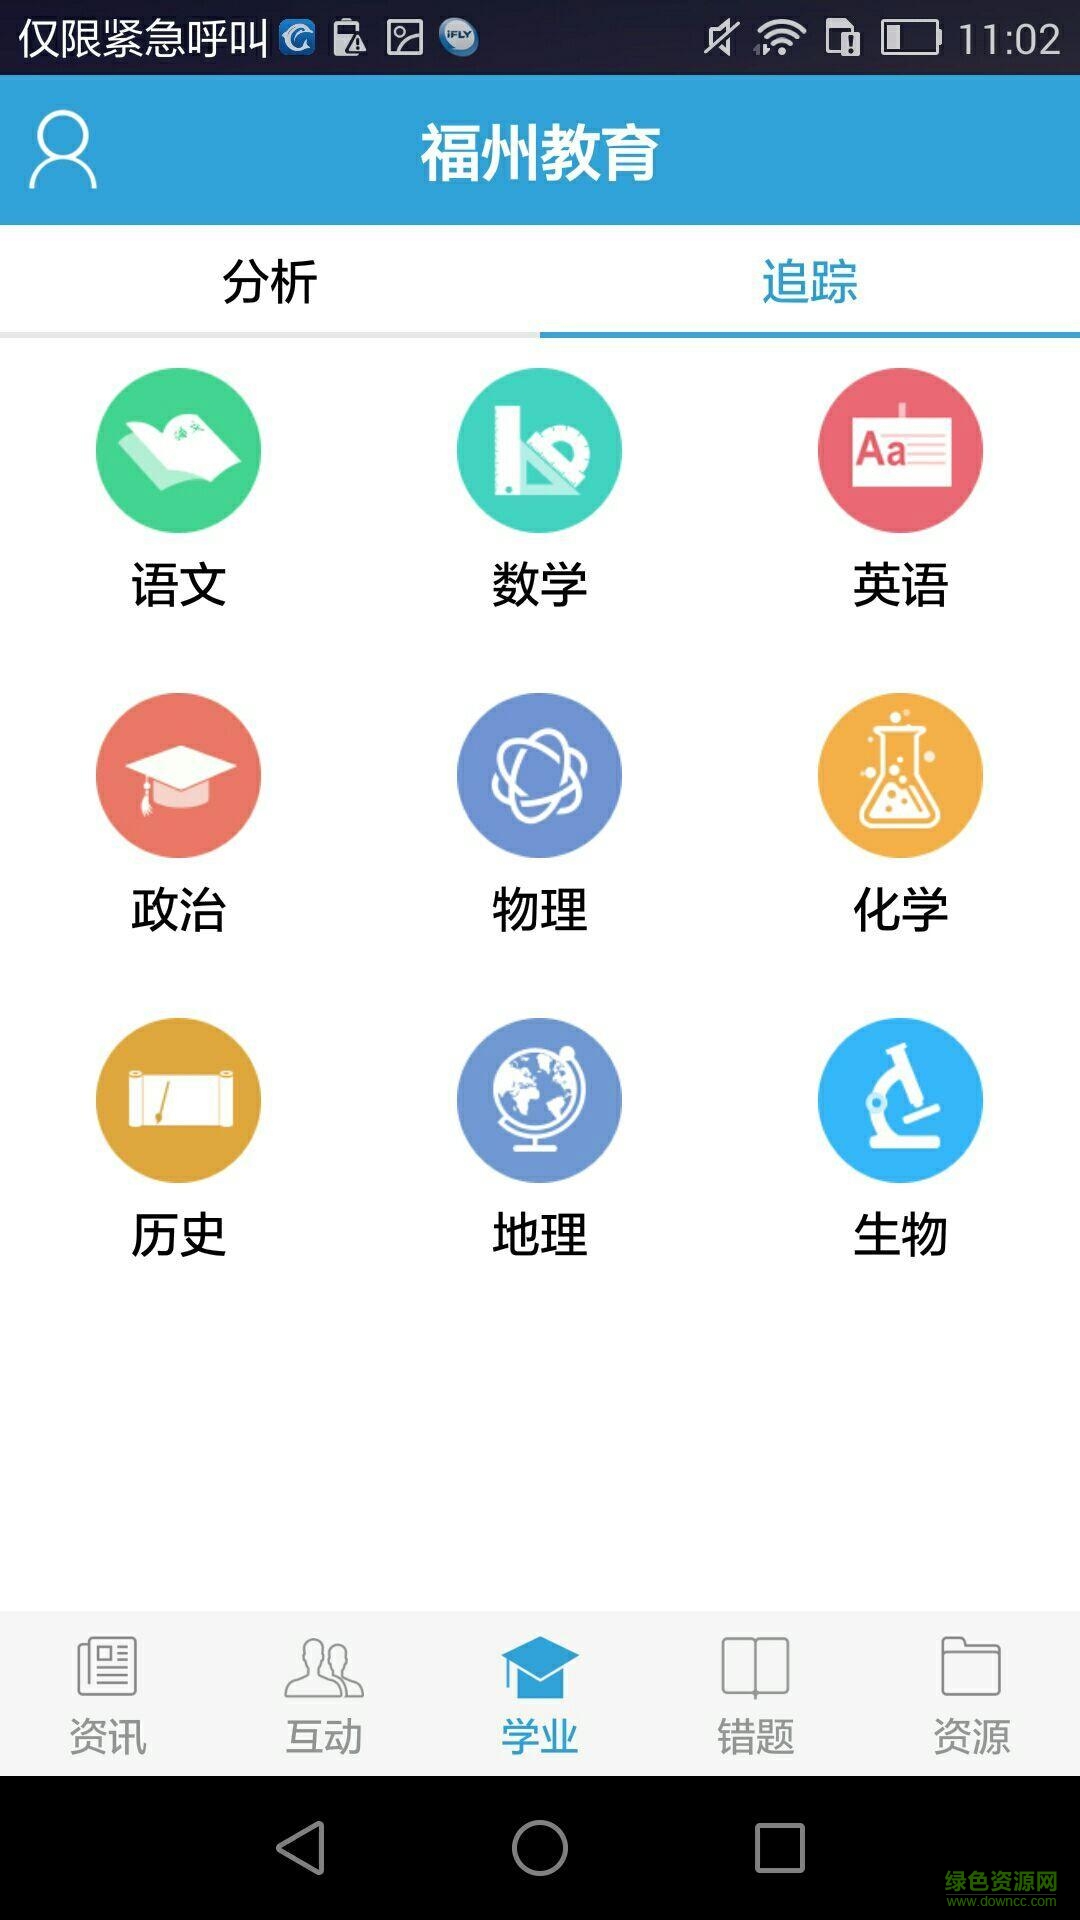 福州教育手机报ios版 v3.7 iphone官方版 0